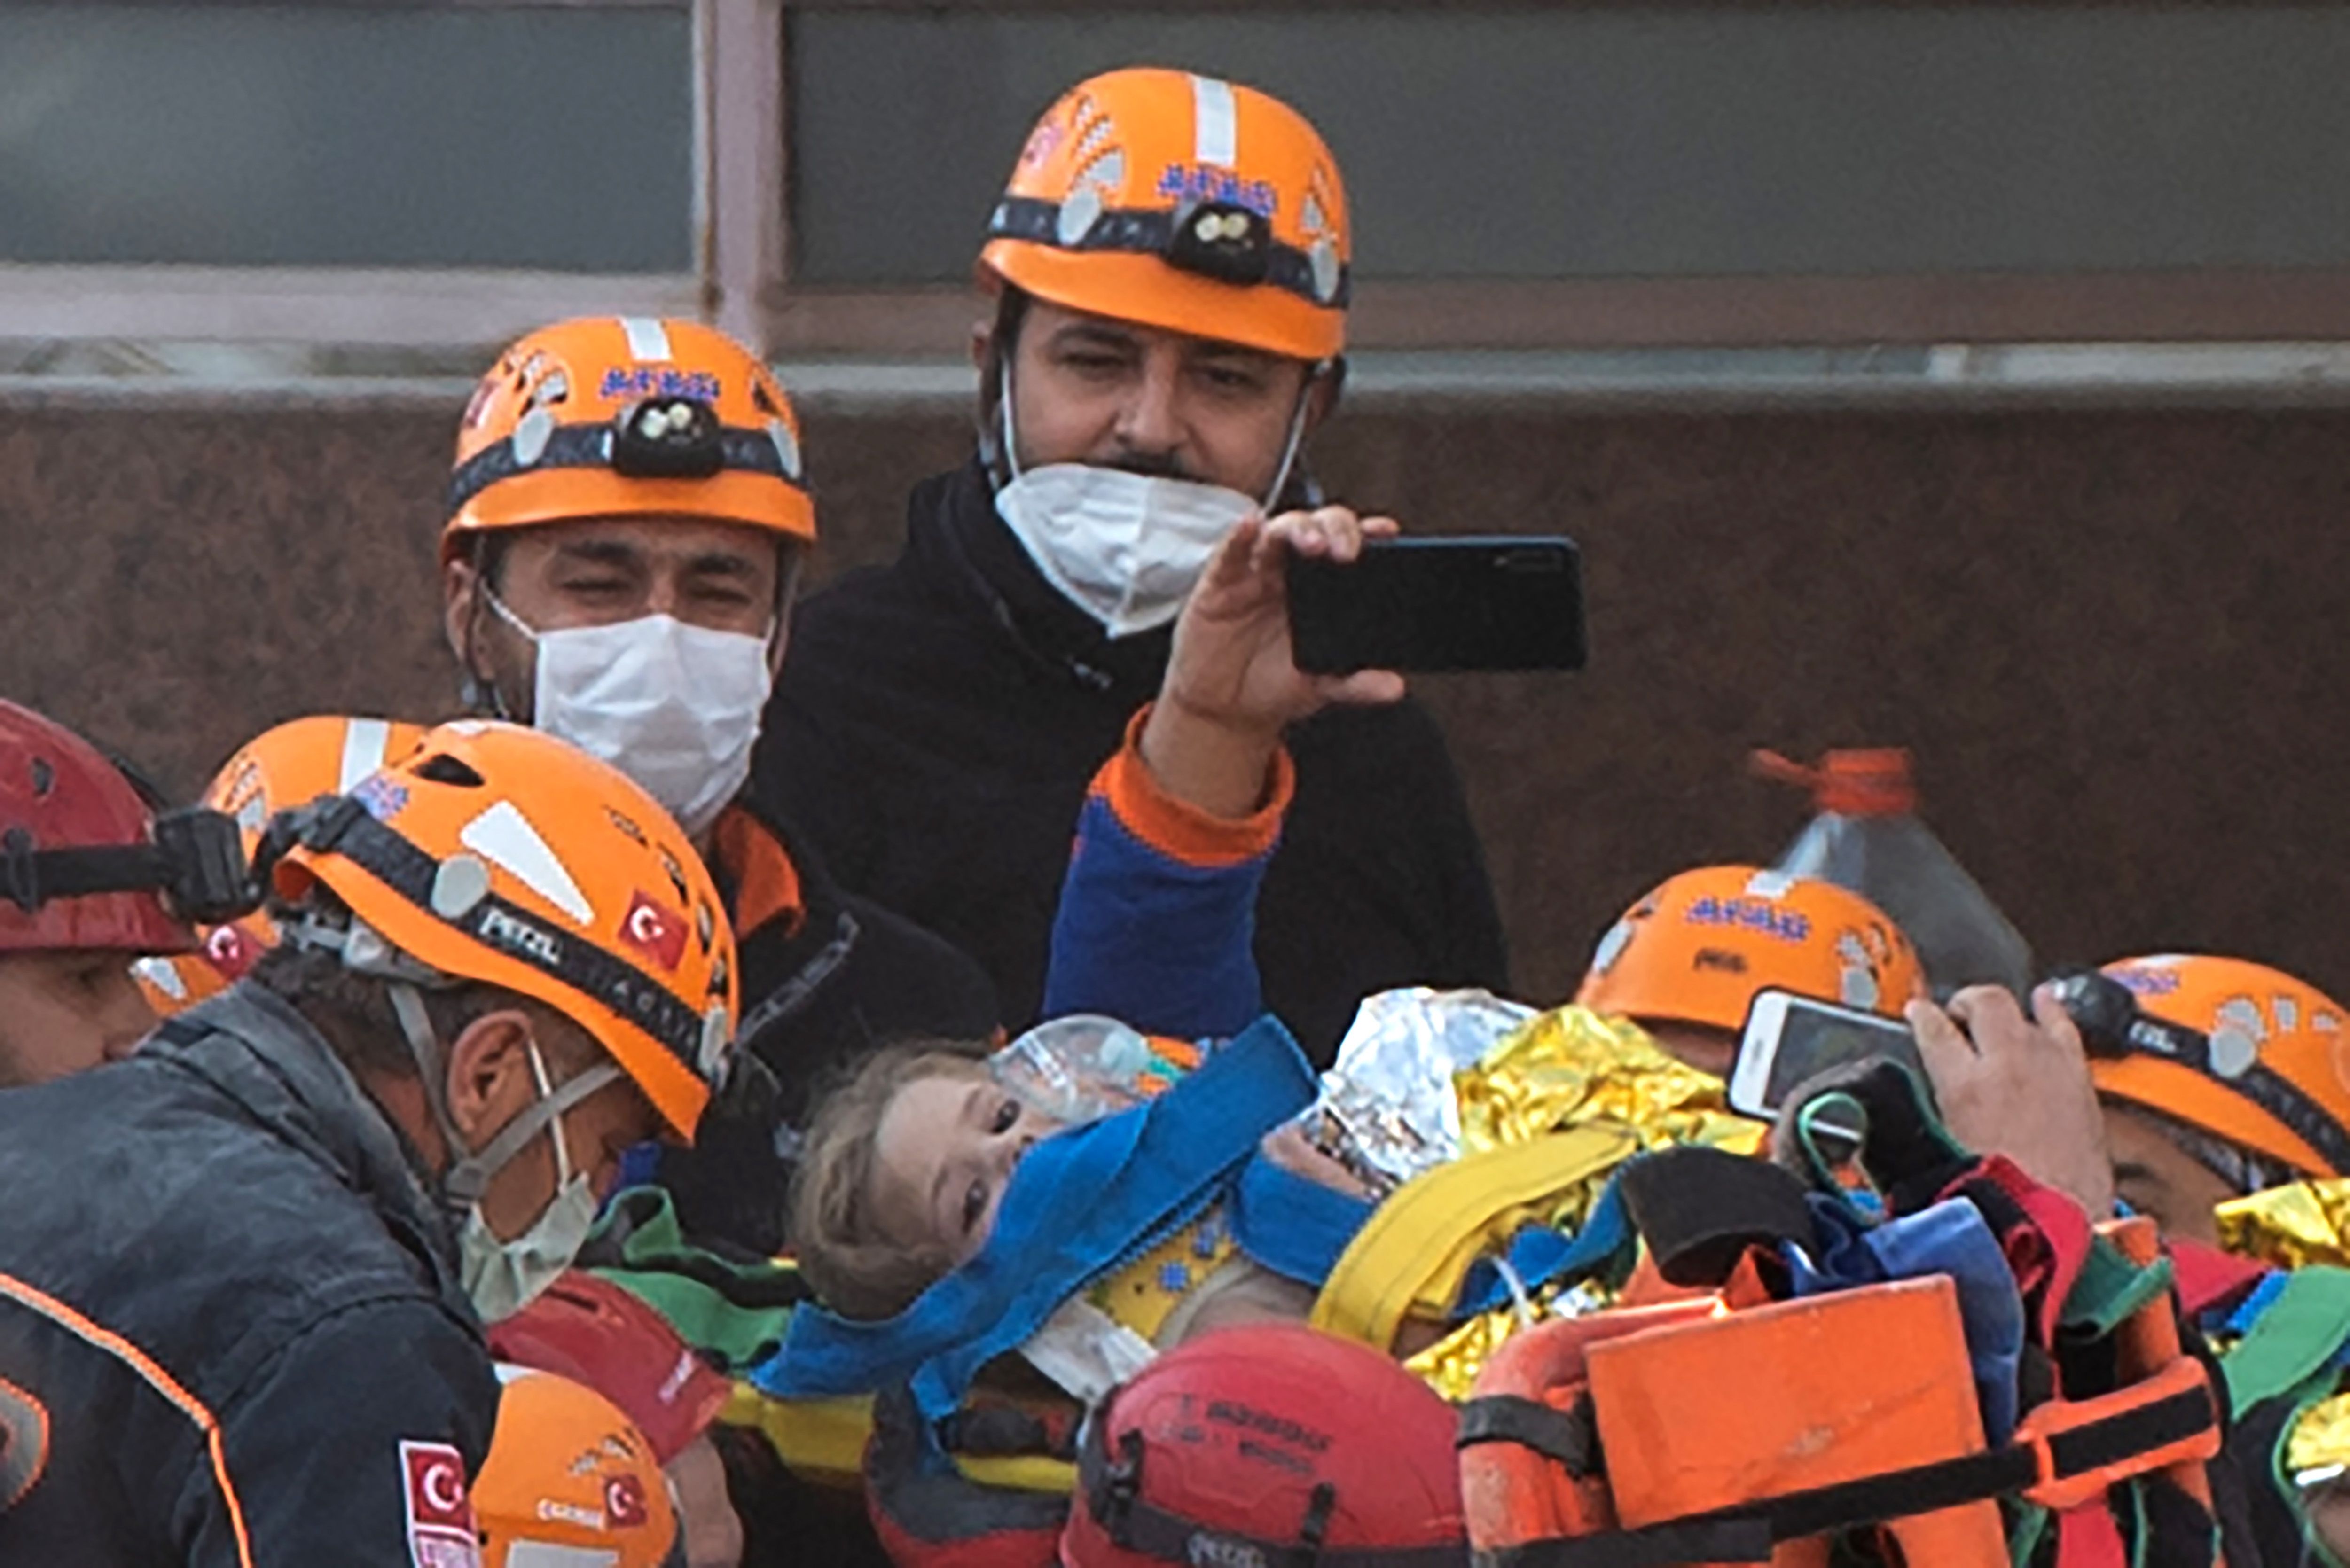 Rescatistas cargan a la niña de 4 años Ayda Gezgin, rescatada entre los escombros del terremoto de Turquía. (Foto Prensa Libre: AFP)